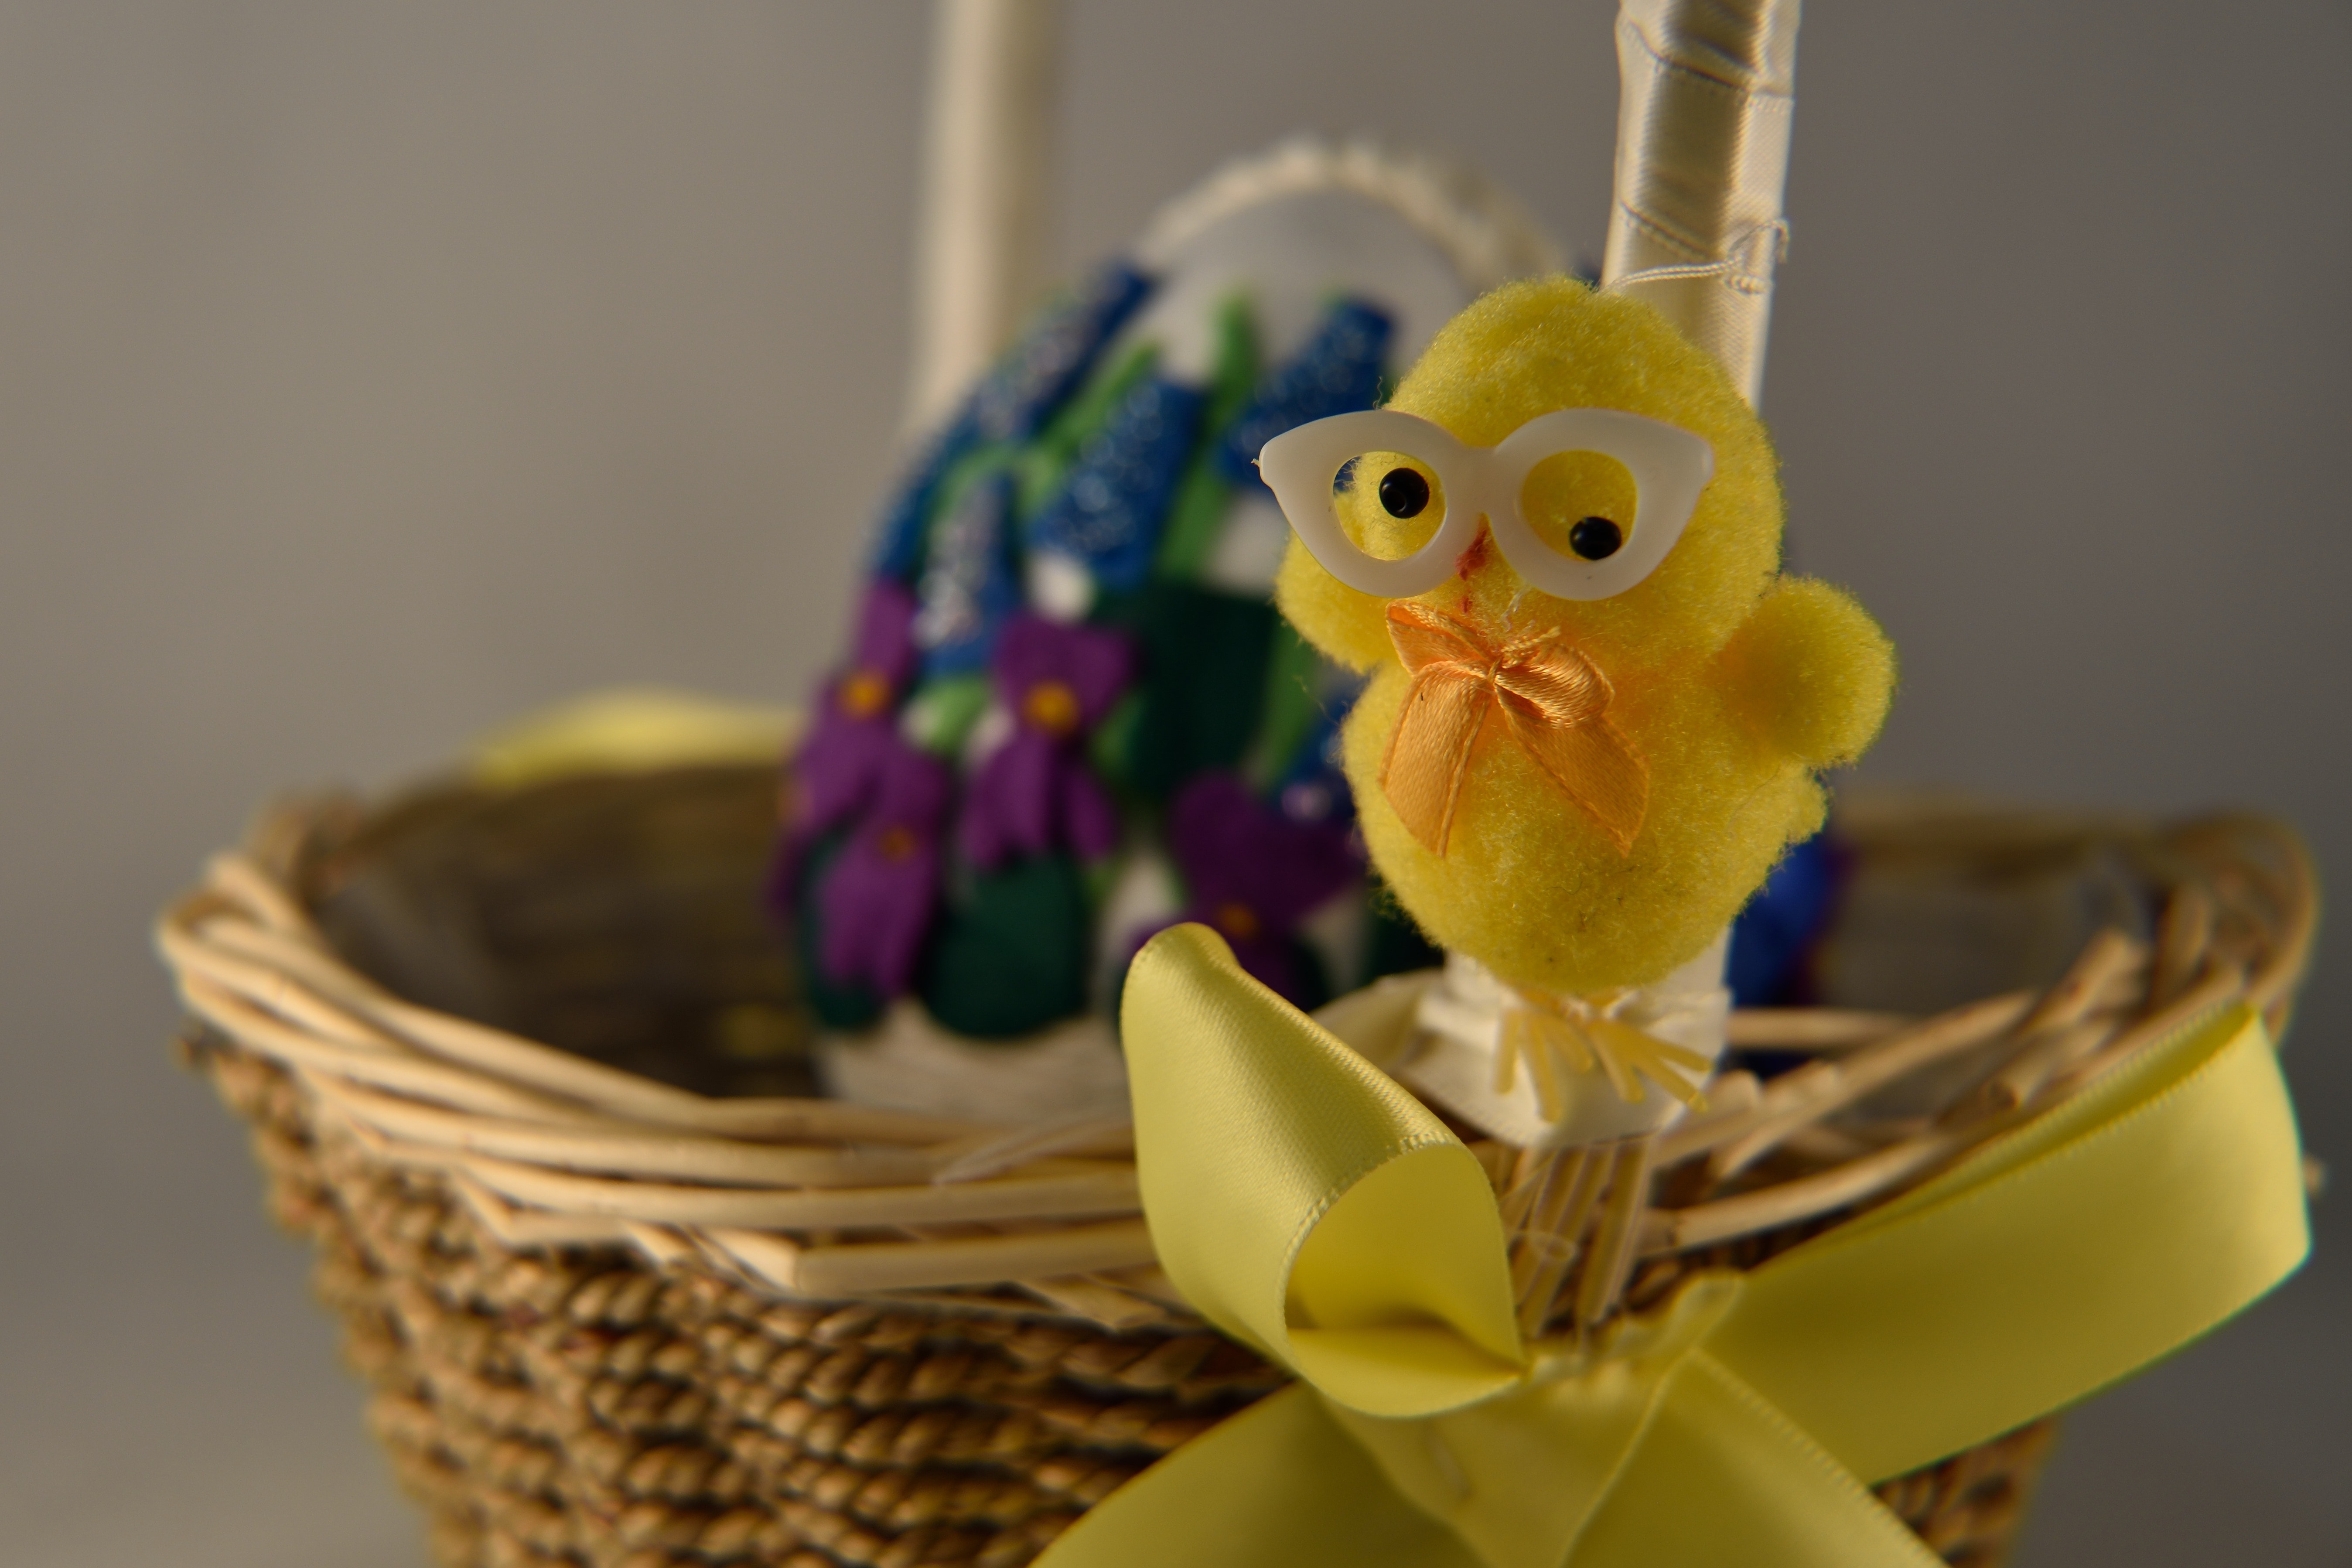 yellow bird with white eyeglasses toy